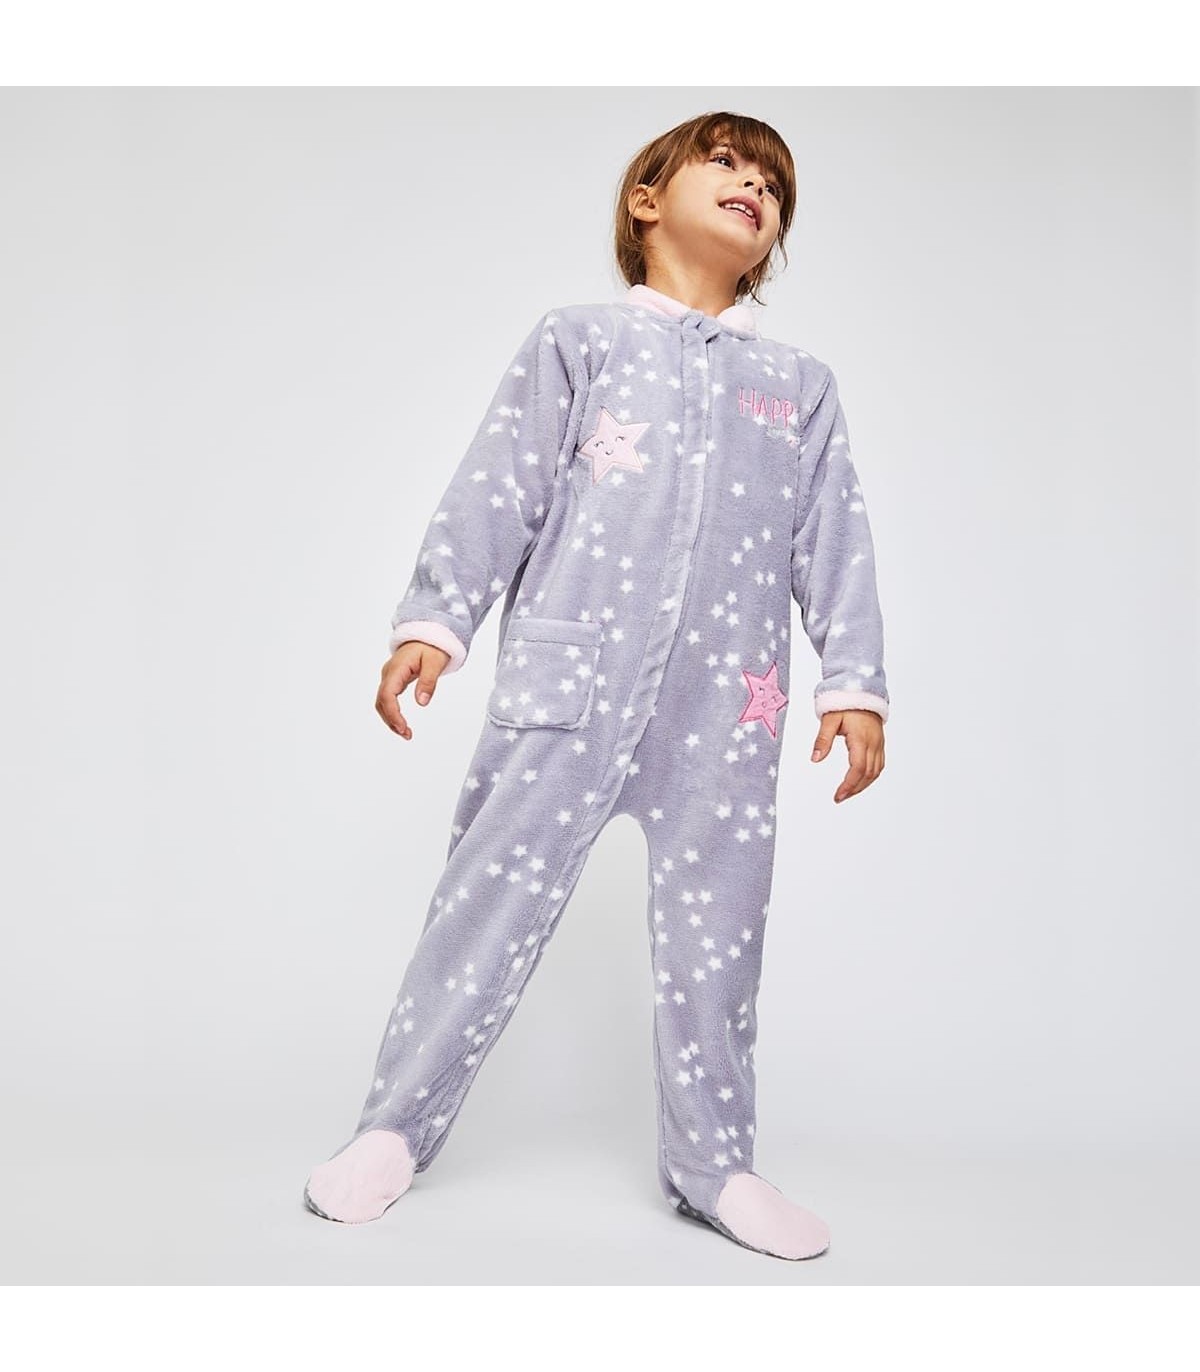 Pijama Manta Buzo Niño 2 a 6 Años - Mercería Inma